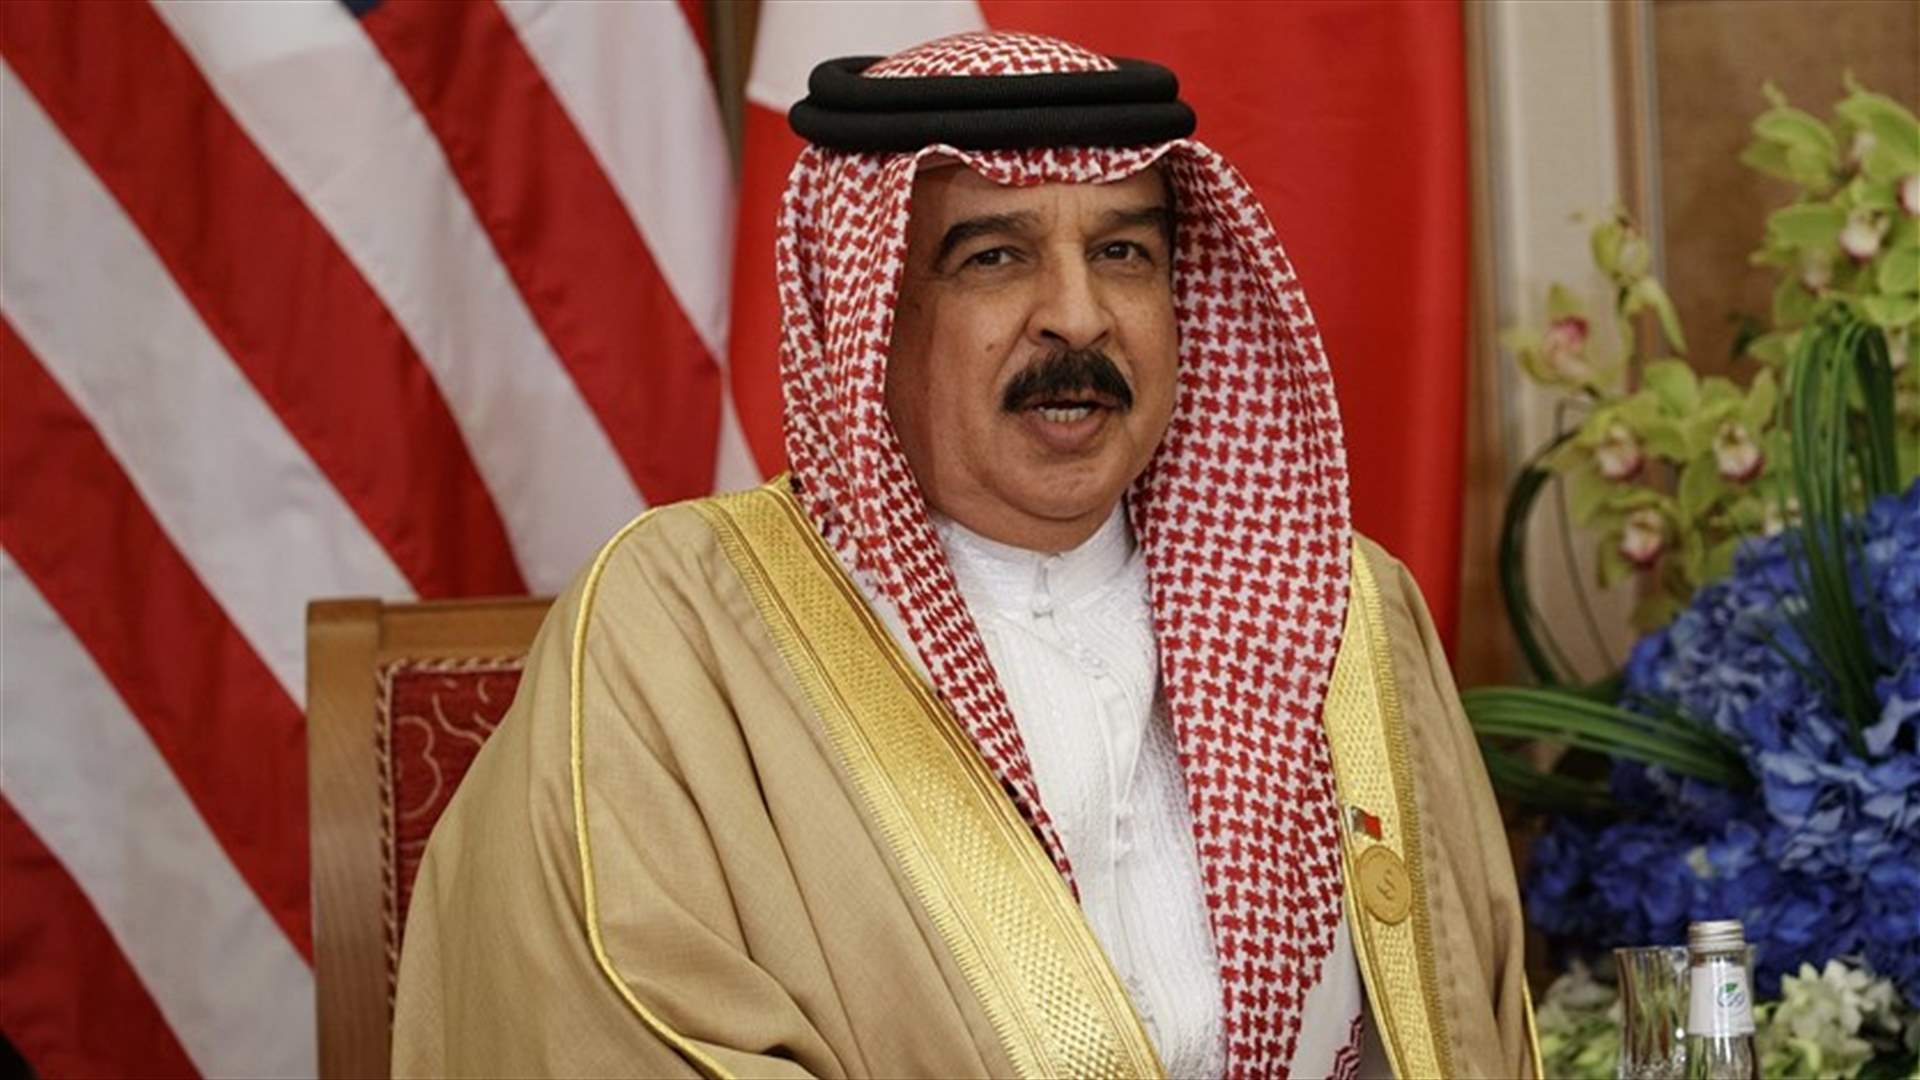 عاهل البحرين يدين الهجمات على منشأتي النفط بالسعودية في اتصال مع الملك سلمان